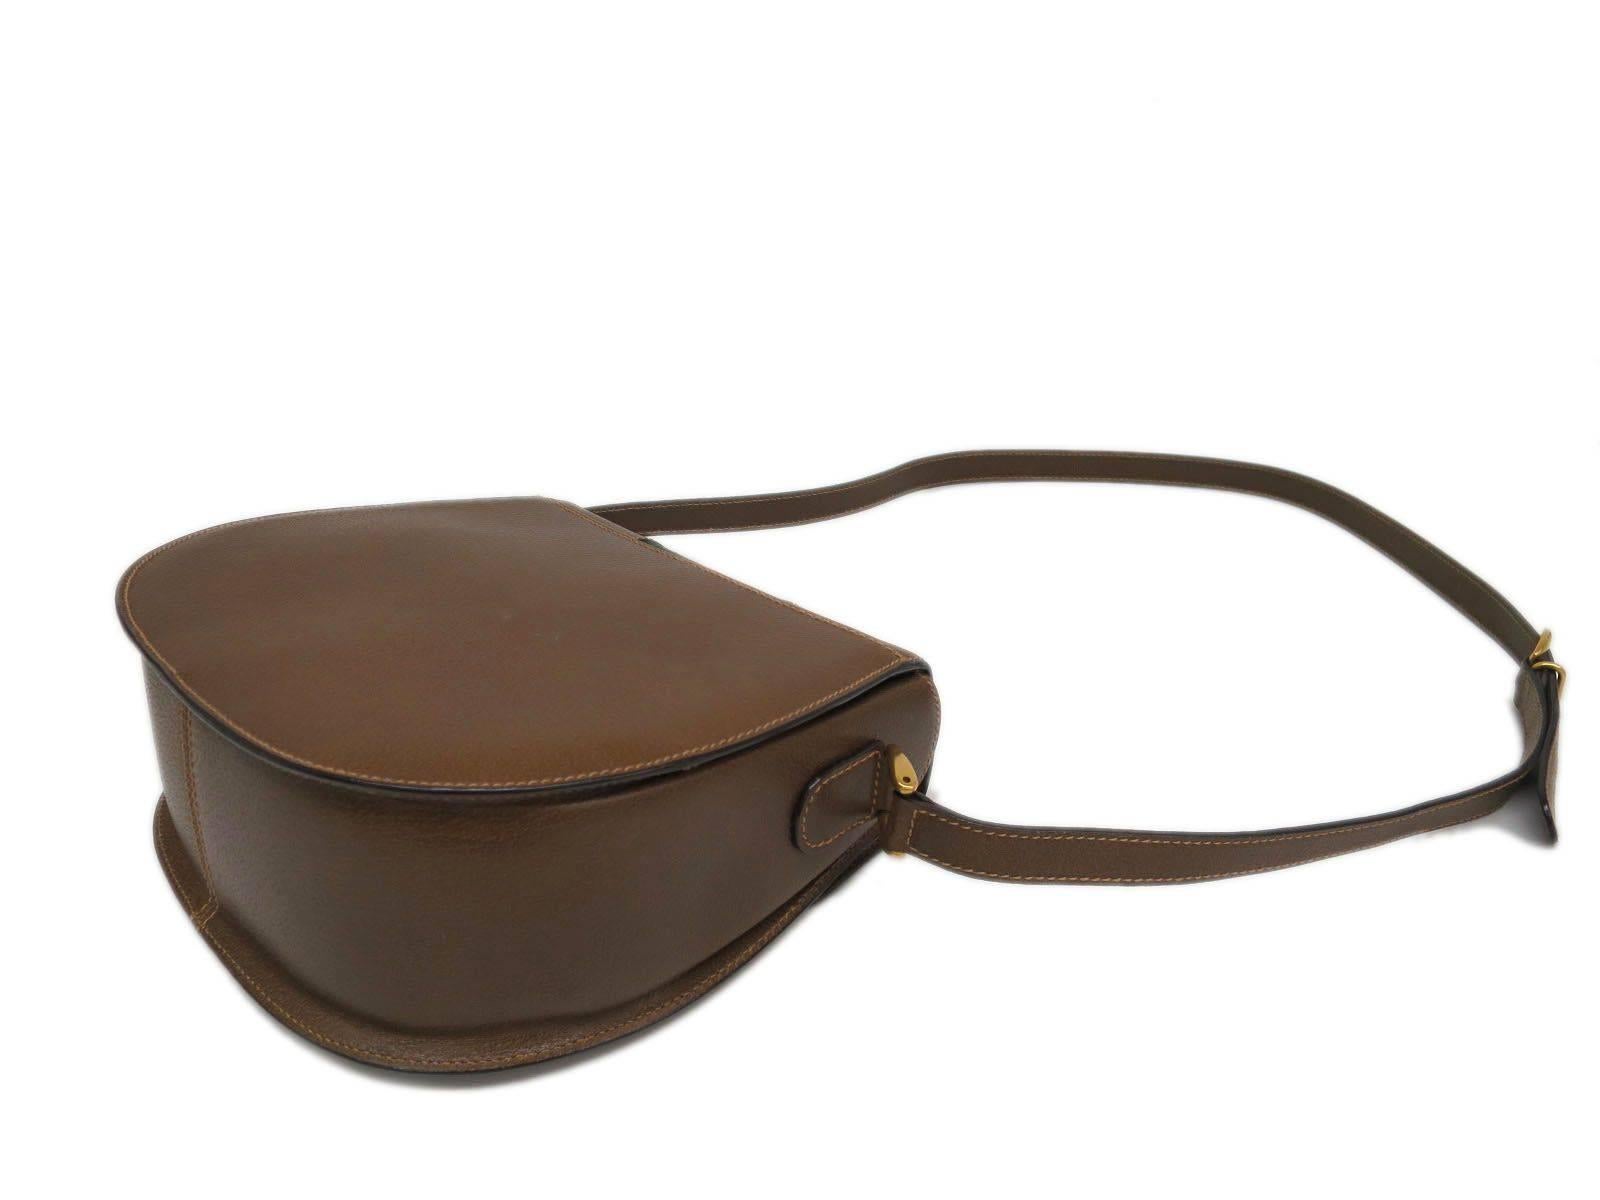 gucci vintage leather shoulder bag